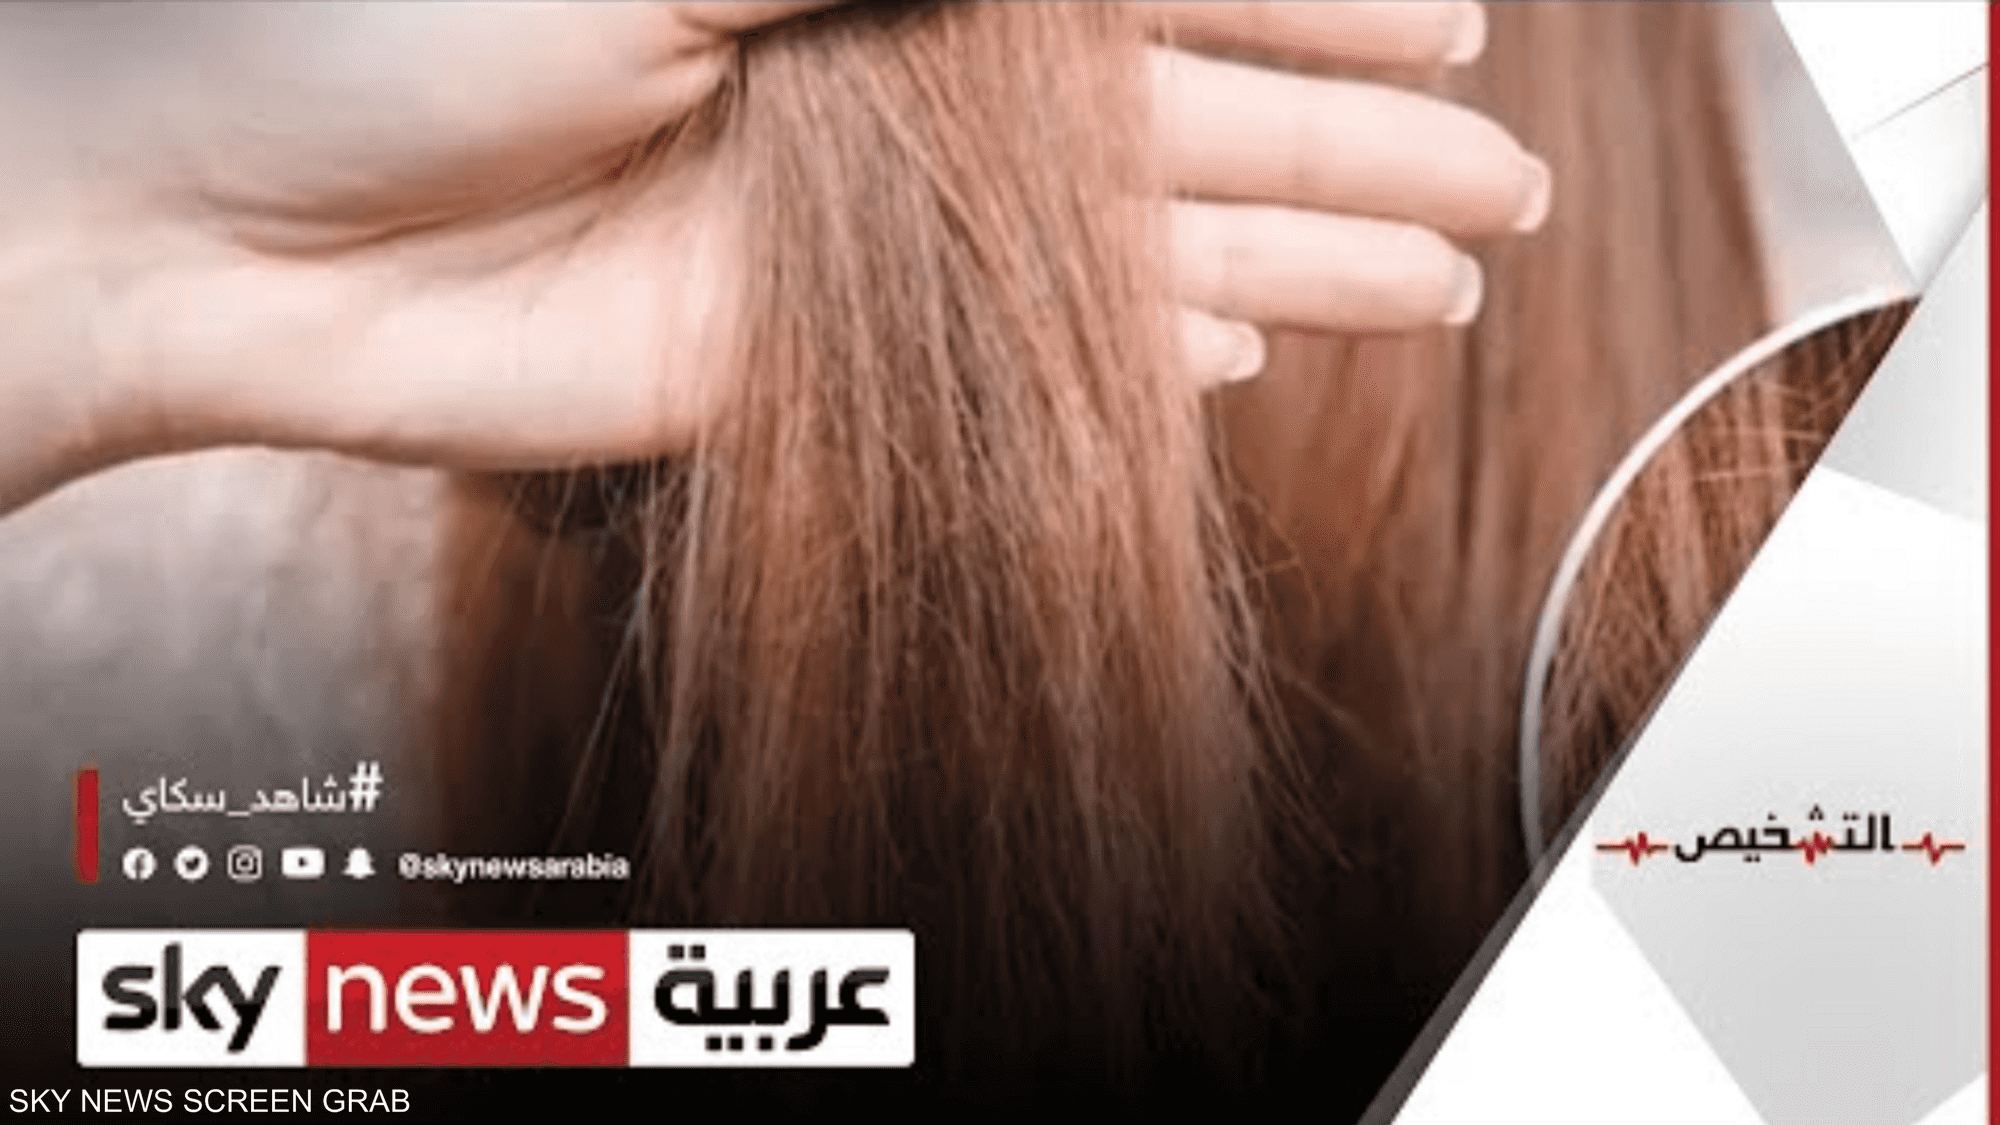 كيف يؤثر نوع الشامبو على صحة الشعر وطبيعته